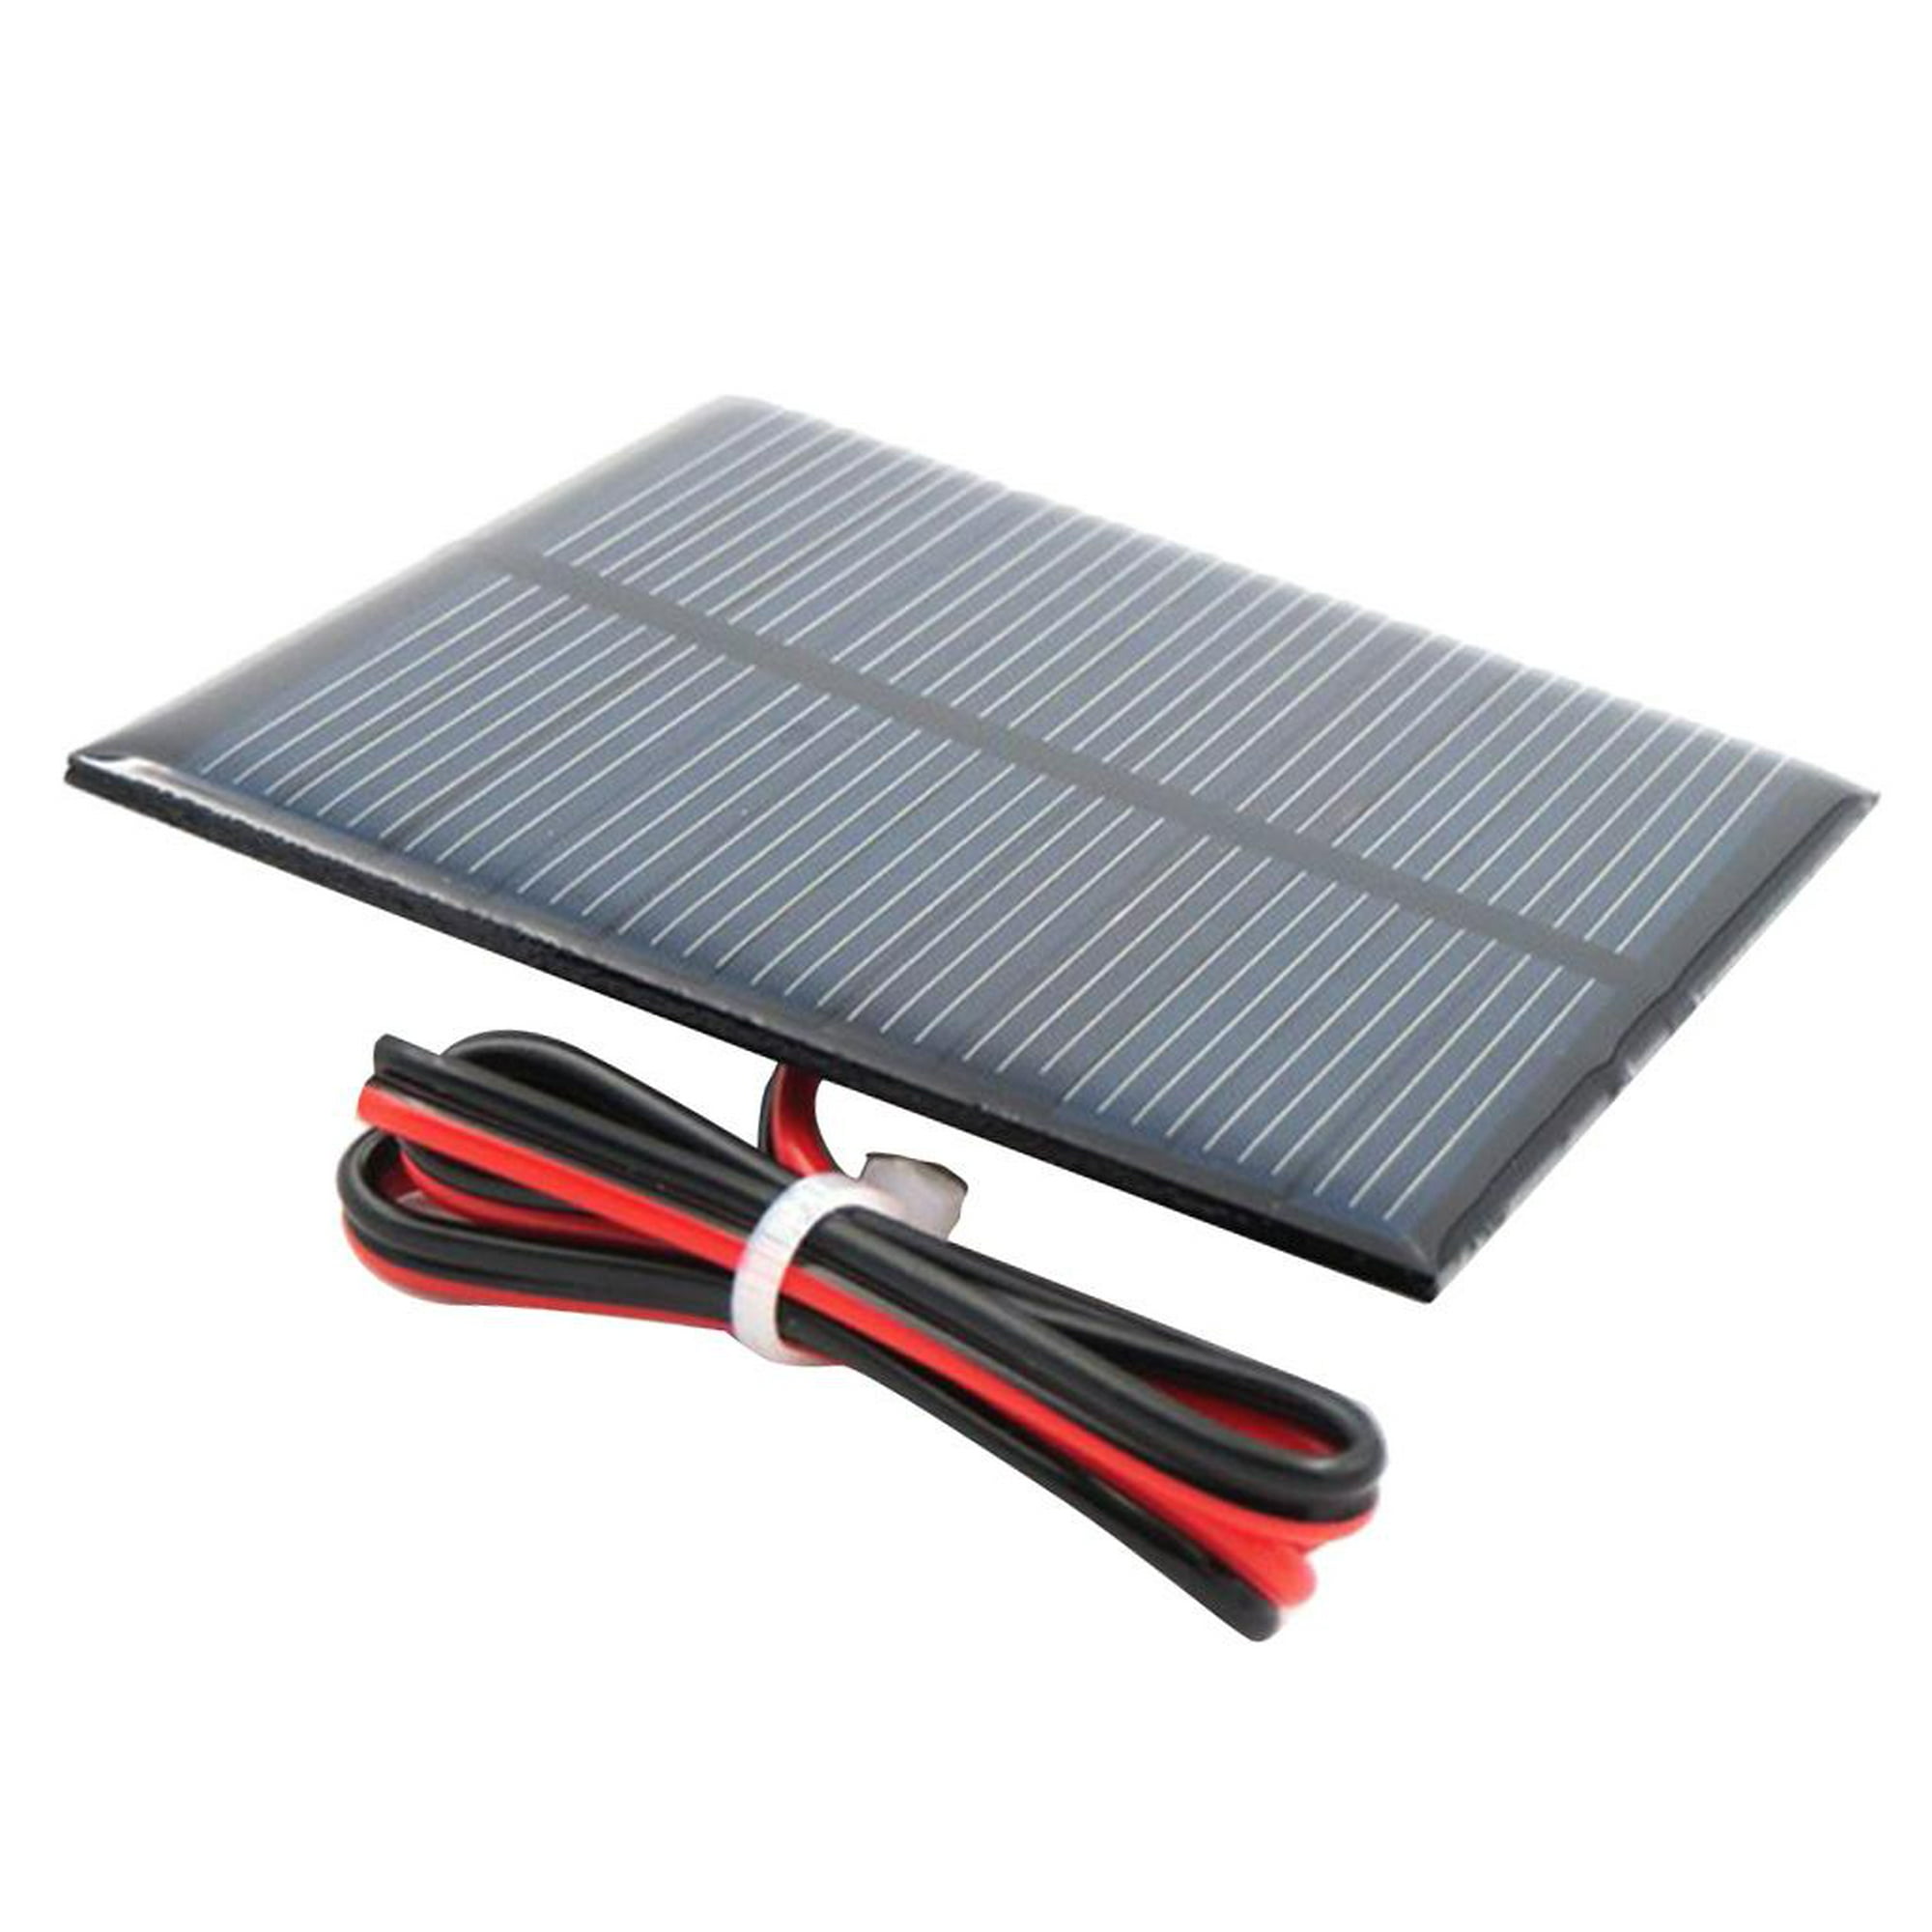 Mini Placa Solar Fotovoltaica 12V 150mA